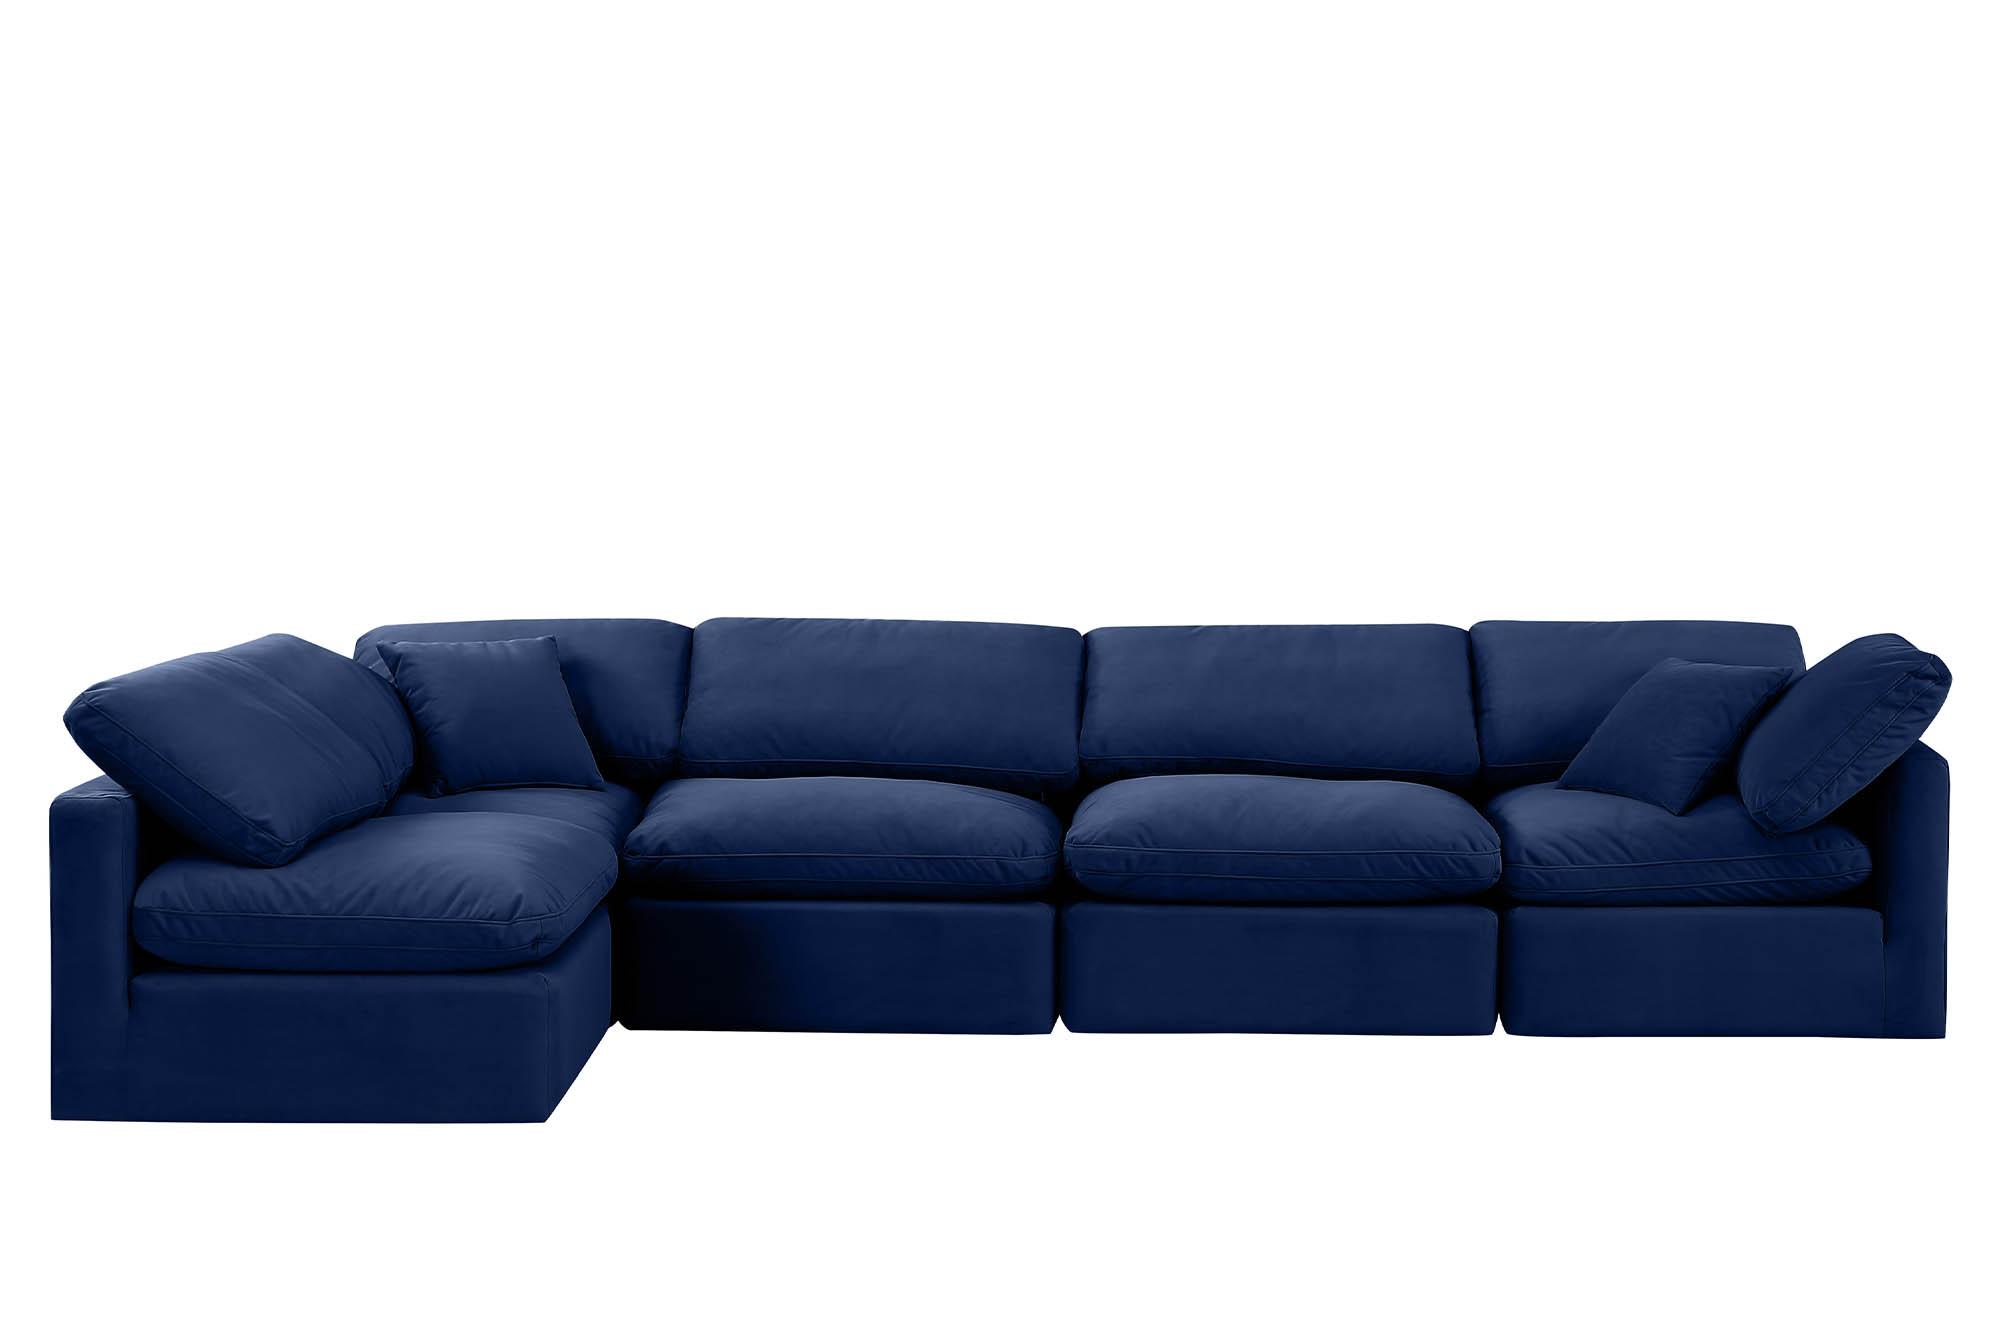 

    
Meridian Furniture INDULGE 147Navy-Sec5D Modular Sectional Sofa Navy 147Navy-Sec5D
